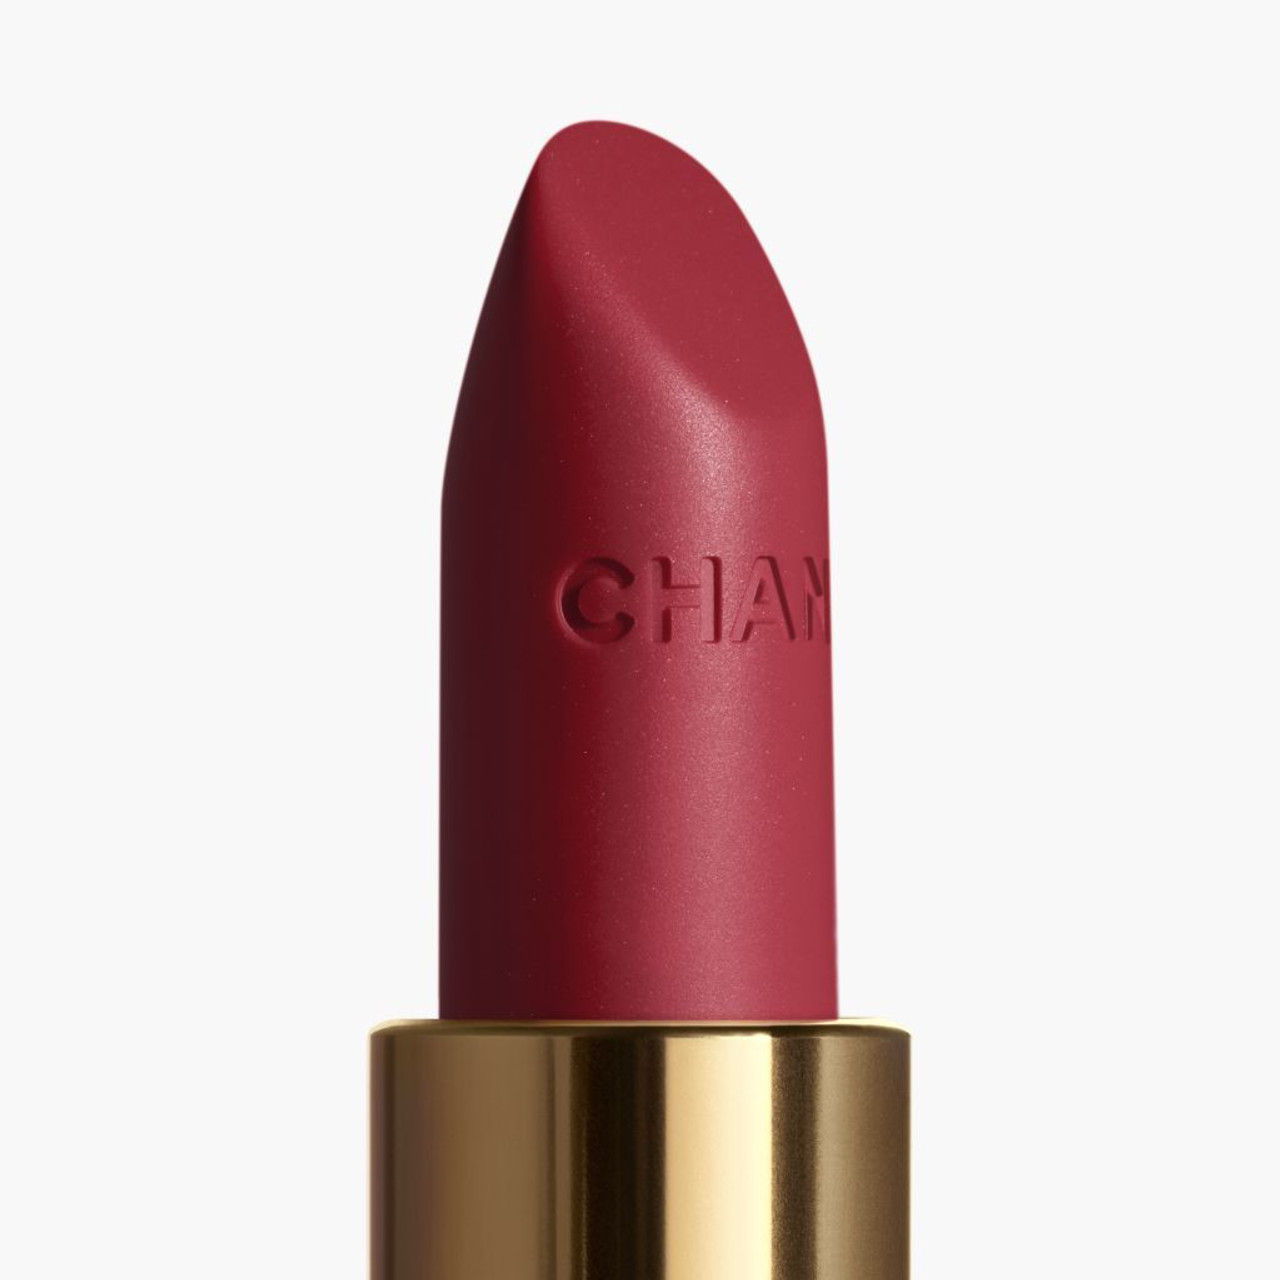 Chanel Rouge Allure Luminous Intense Lip Colour Number 91, Seduisante 3.5 g  : : Beauty